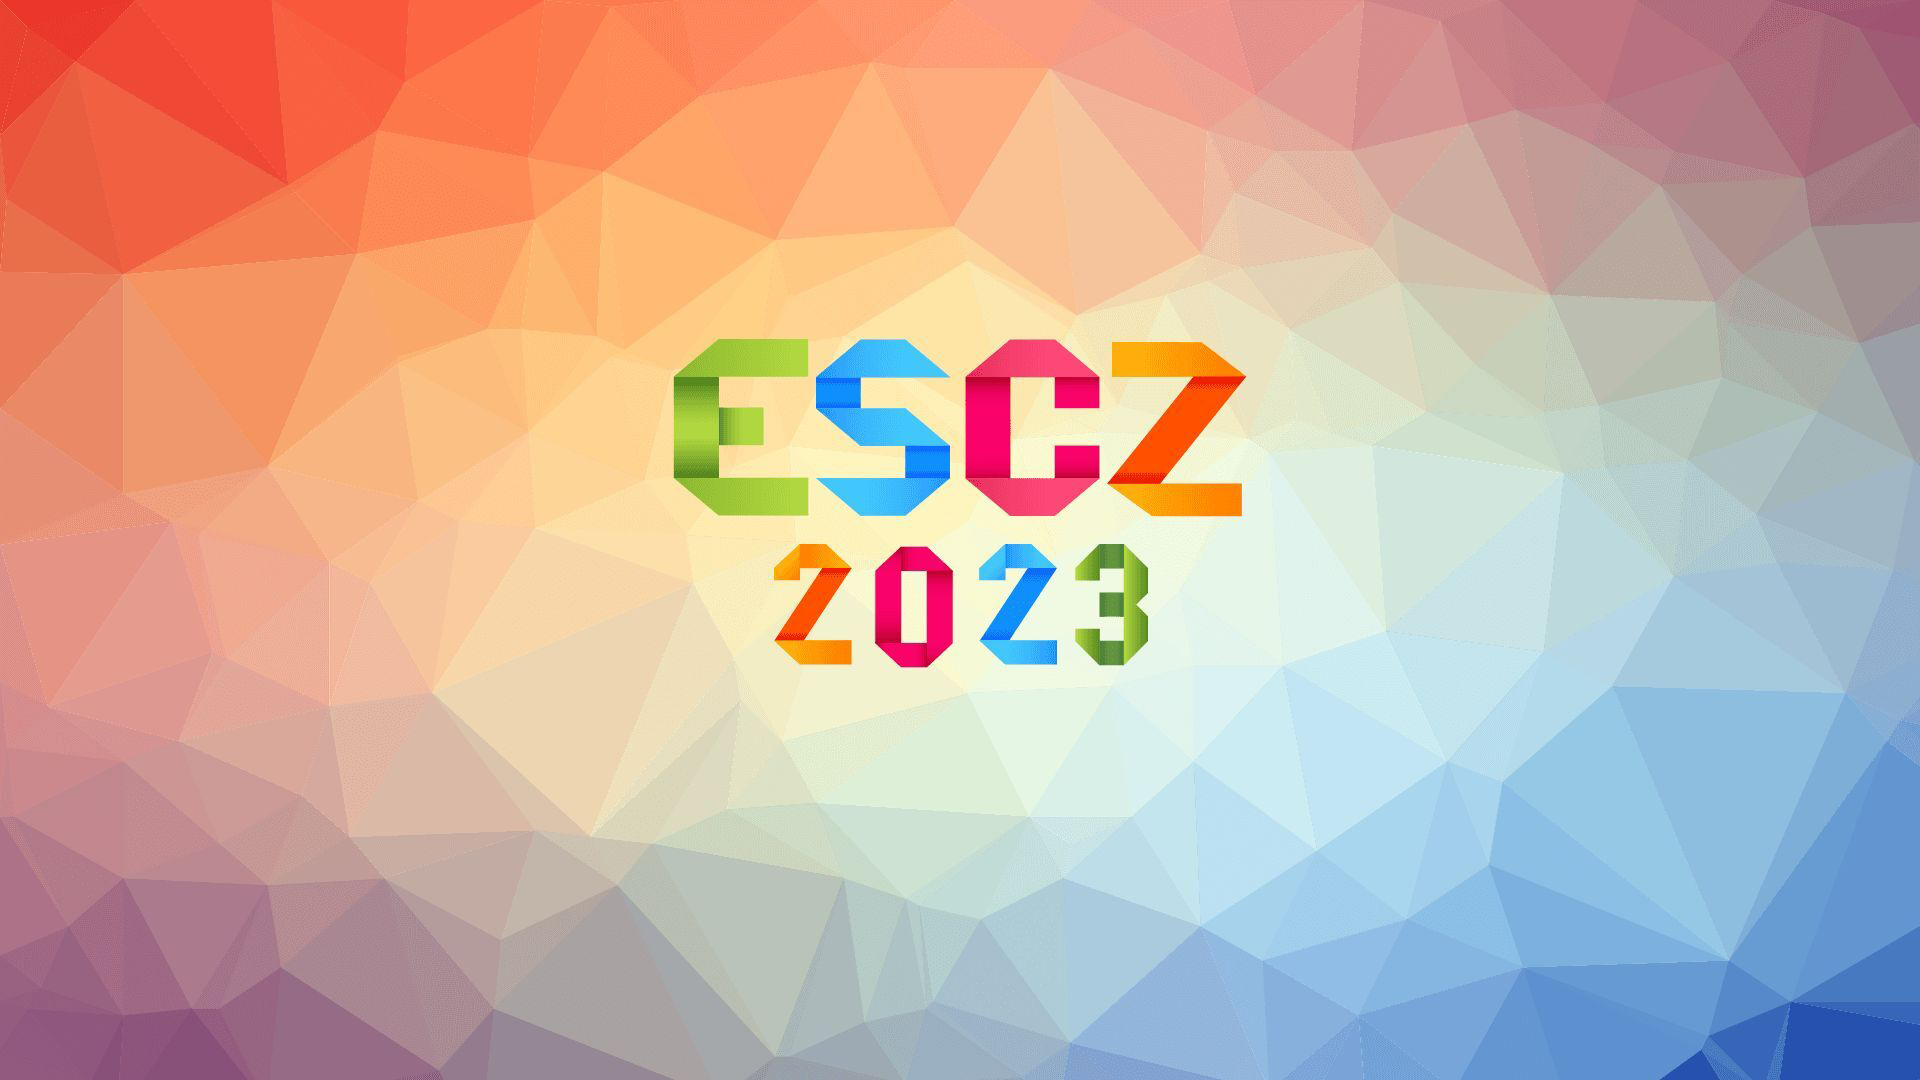 Vuelve la final nacional checa tras más de 15 años con el ESCZ 2023: participantes, mecánica, horario y como verlo